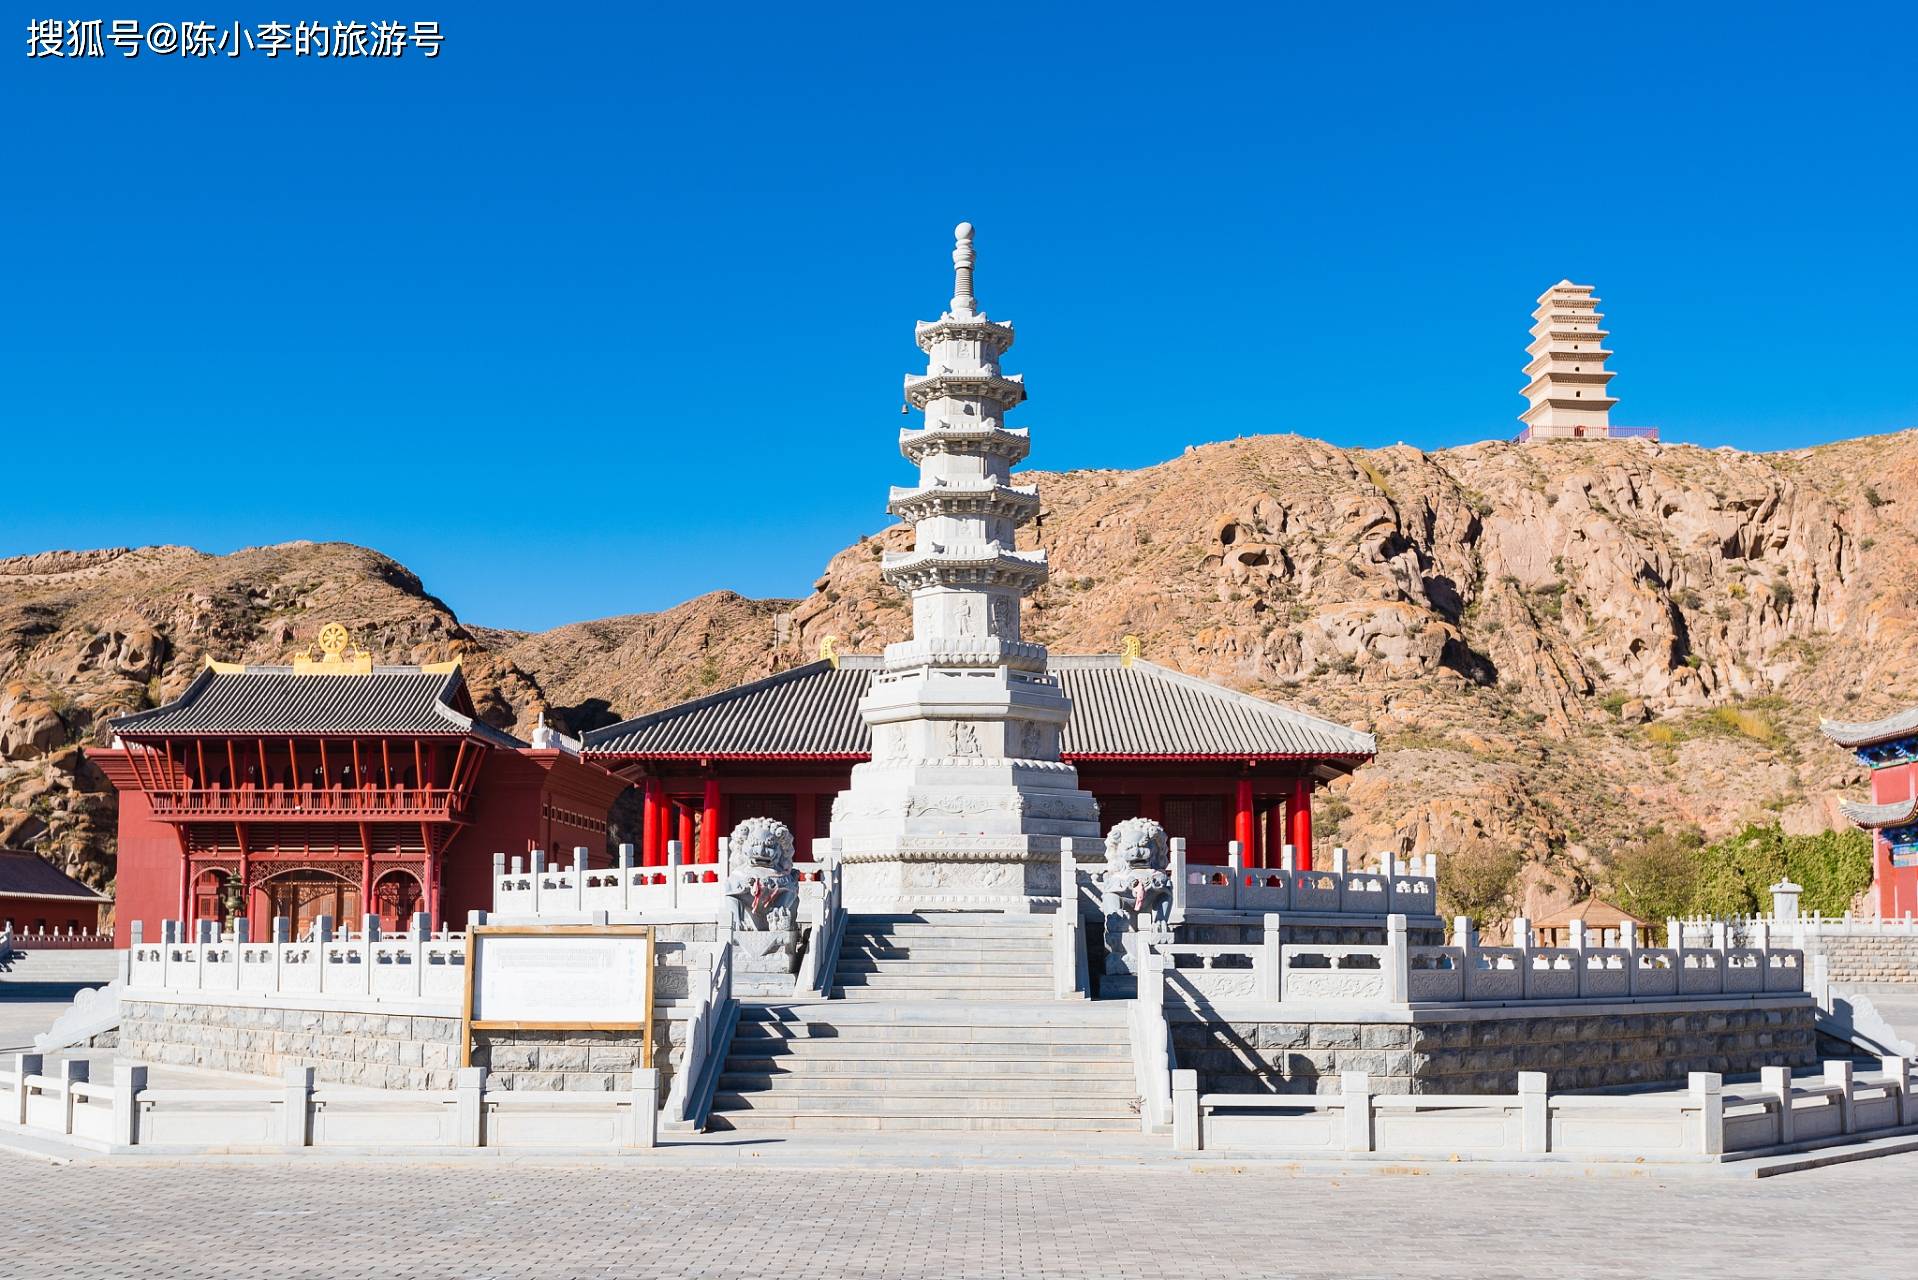 甘肃张掖市大佛寺,丝绸之路上的千年古刹 ,闻名国内外